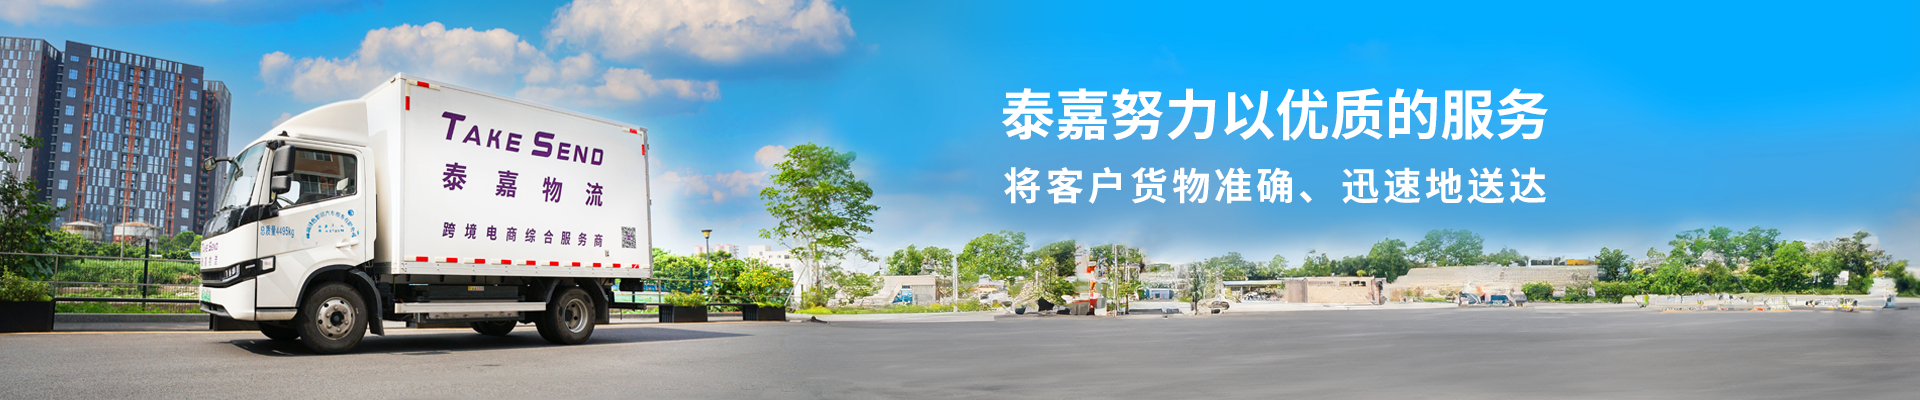 深圳泰嘉物流公司致力于提供專業優質的國際快遞服務